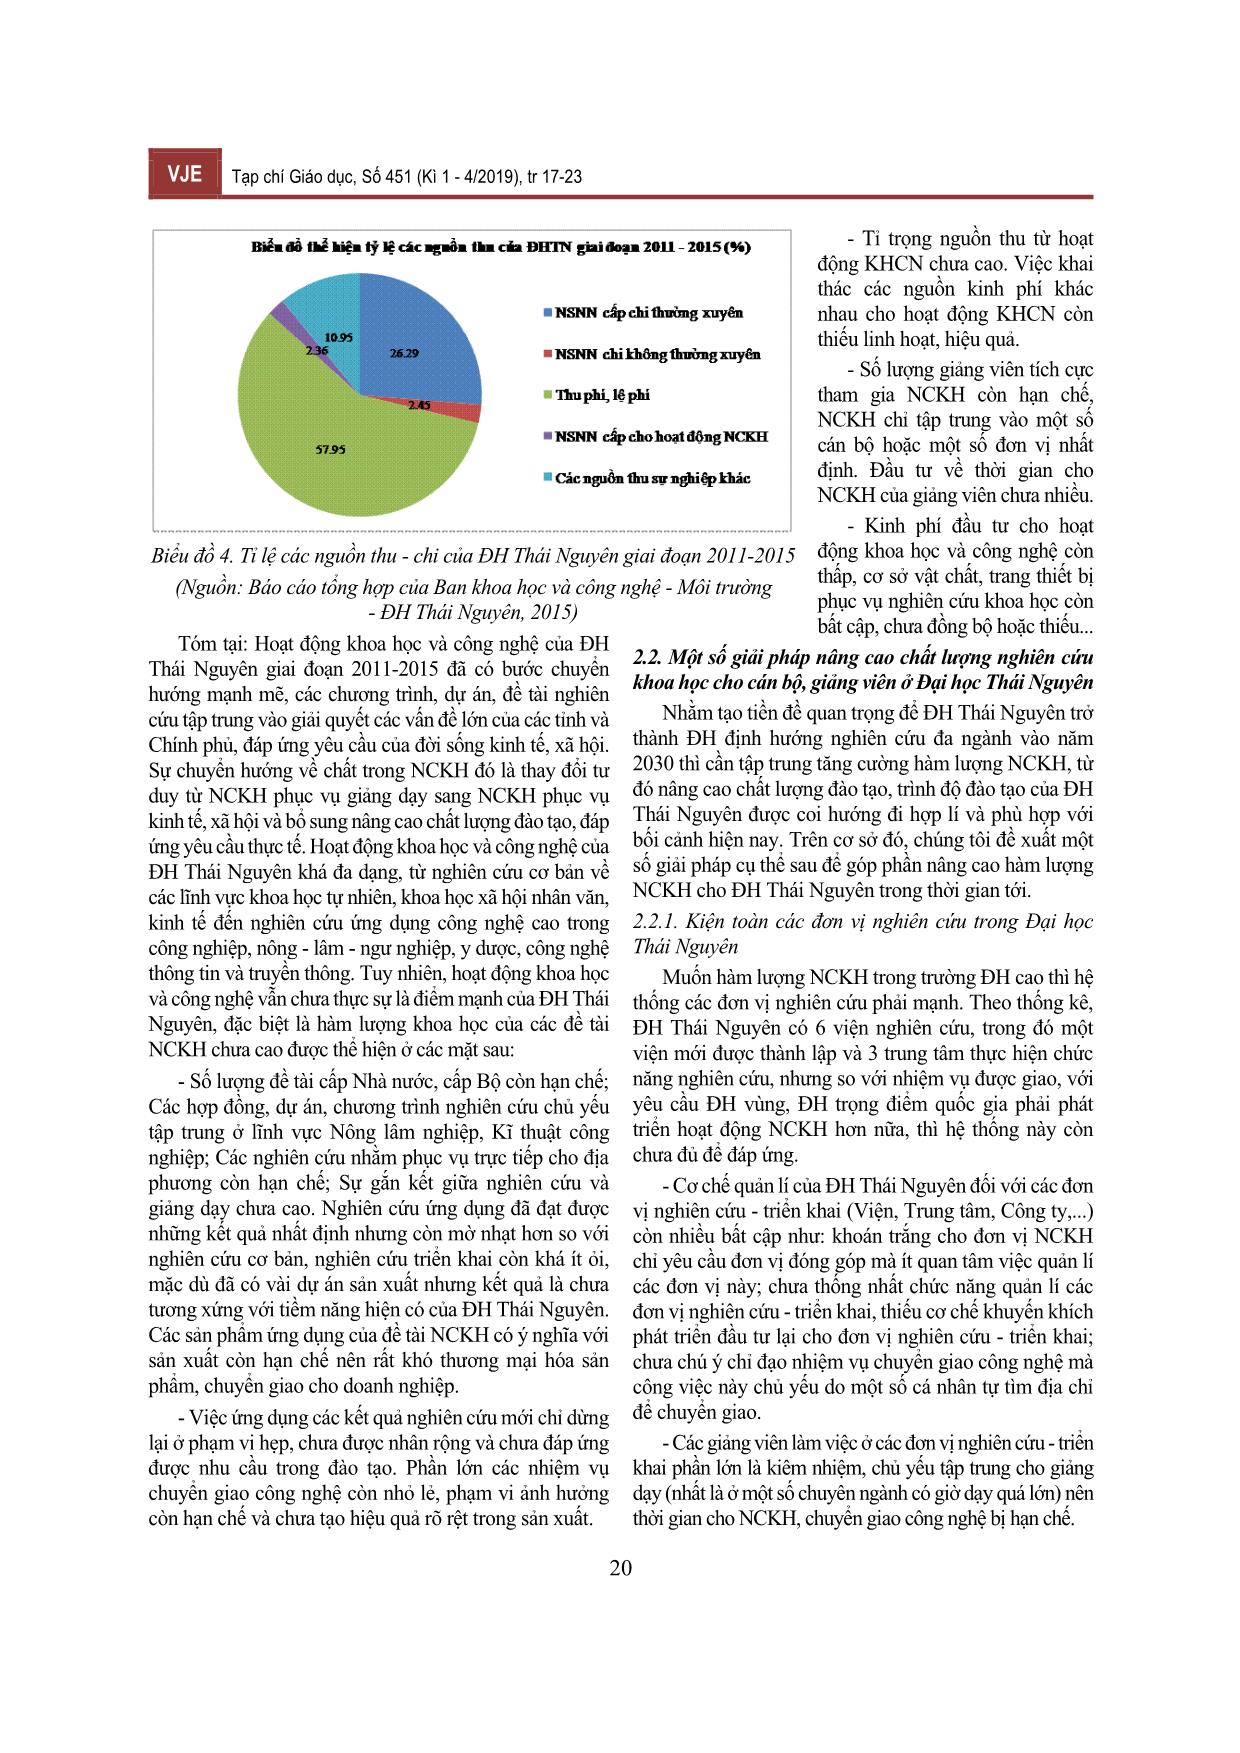 Một số giải pháp nâng cao chất lượng nghiên cứu khoa học cho cán bộ, giảng viên ở Đại học Thái Nguyên trang 4